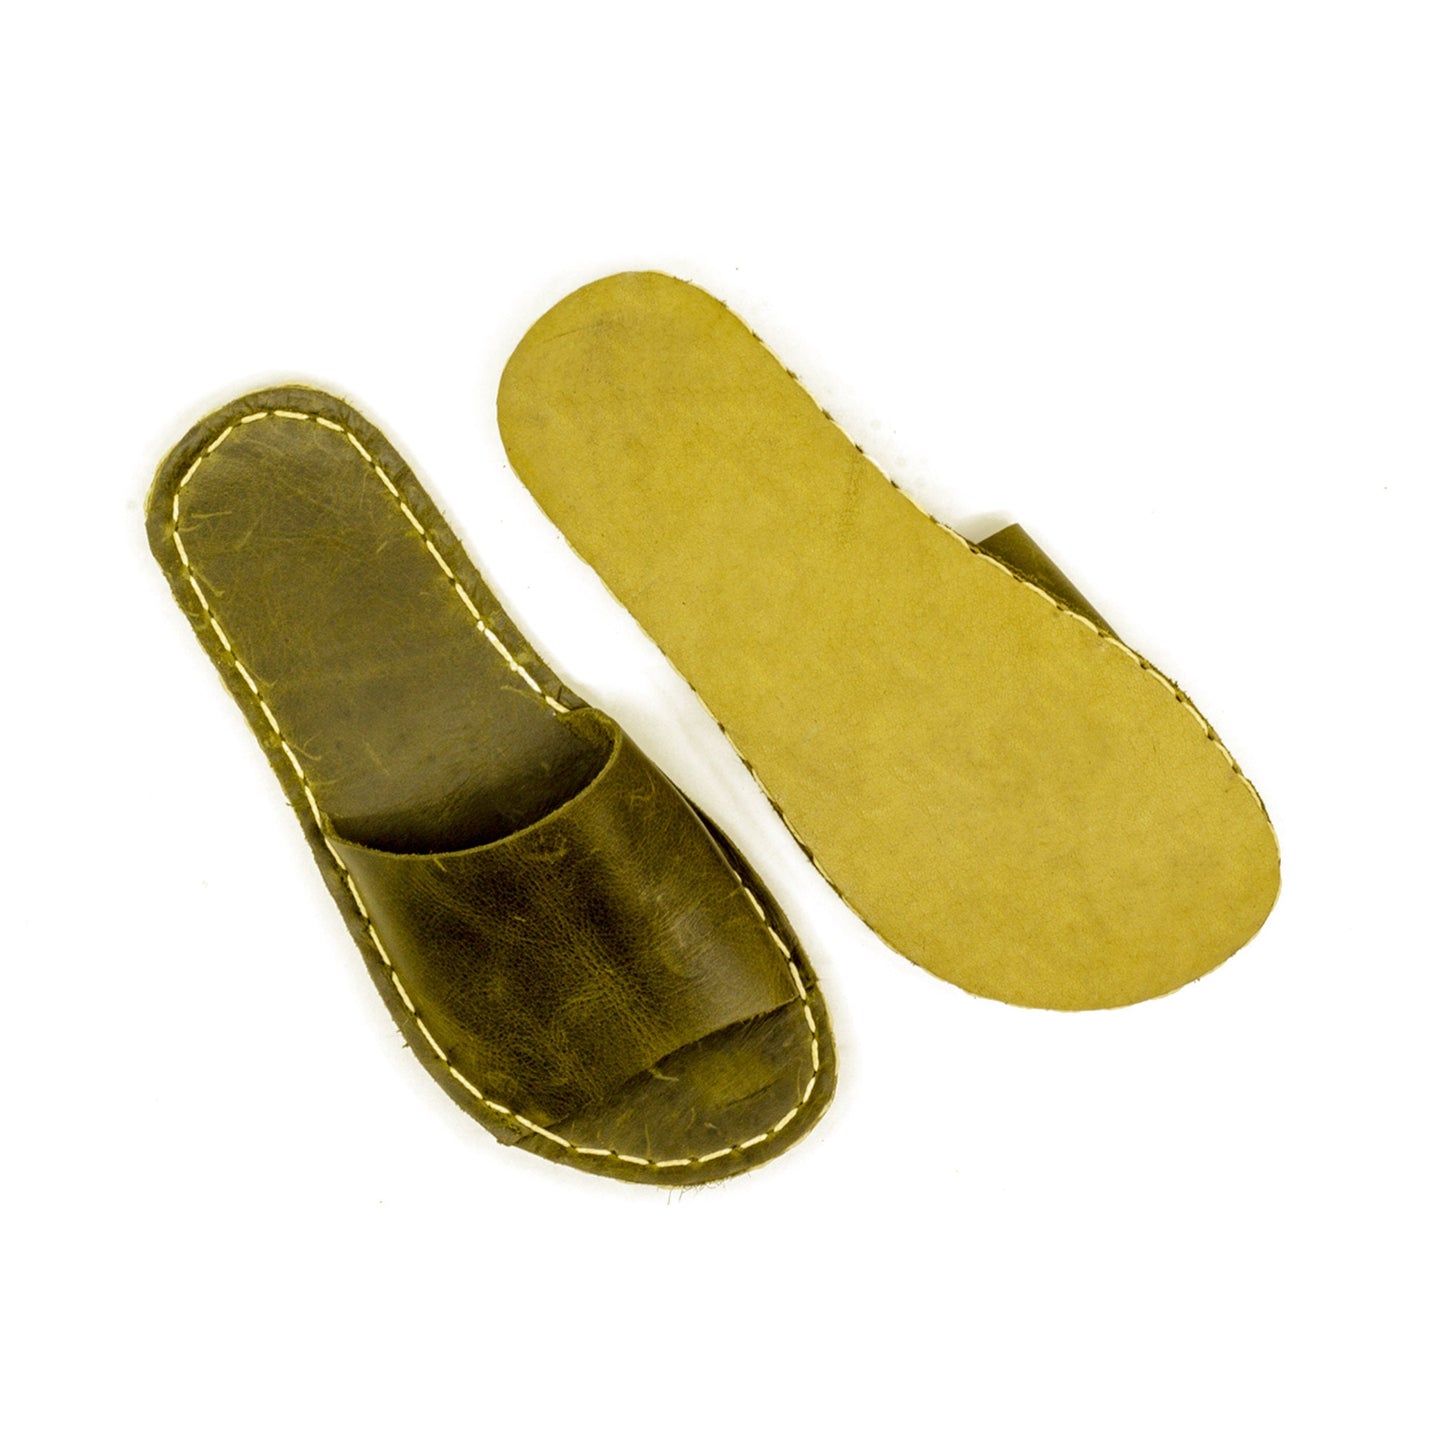 Tape Handmade Olive Green Leather Slippers for Men